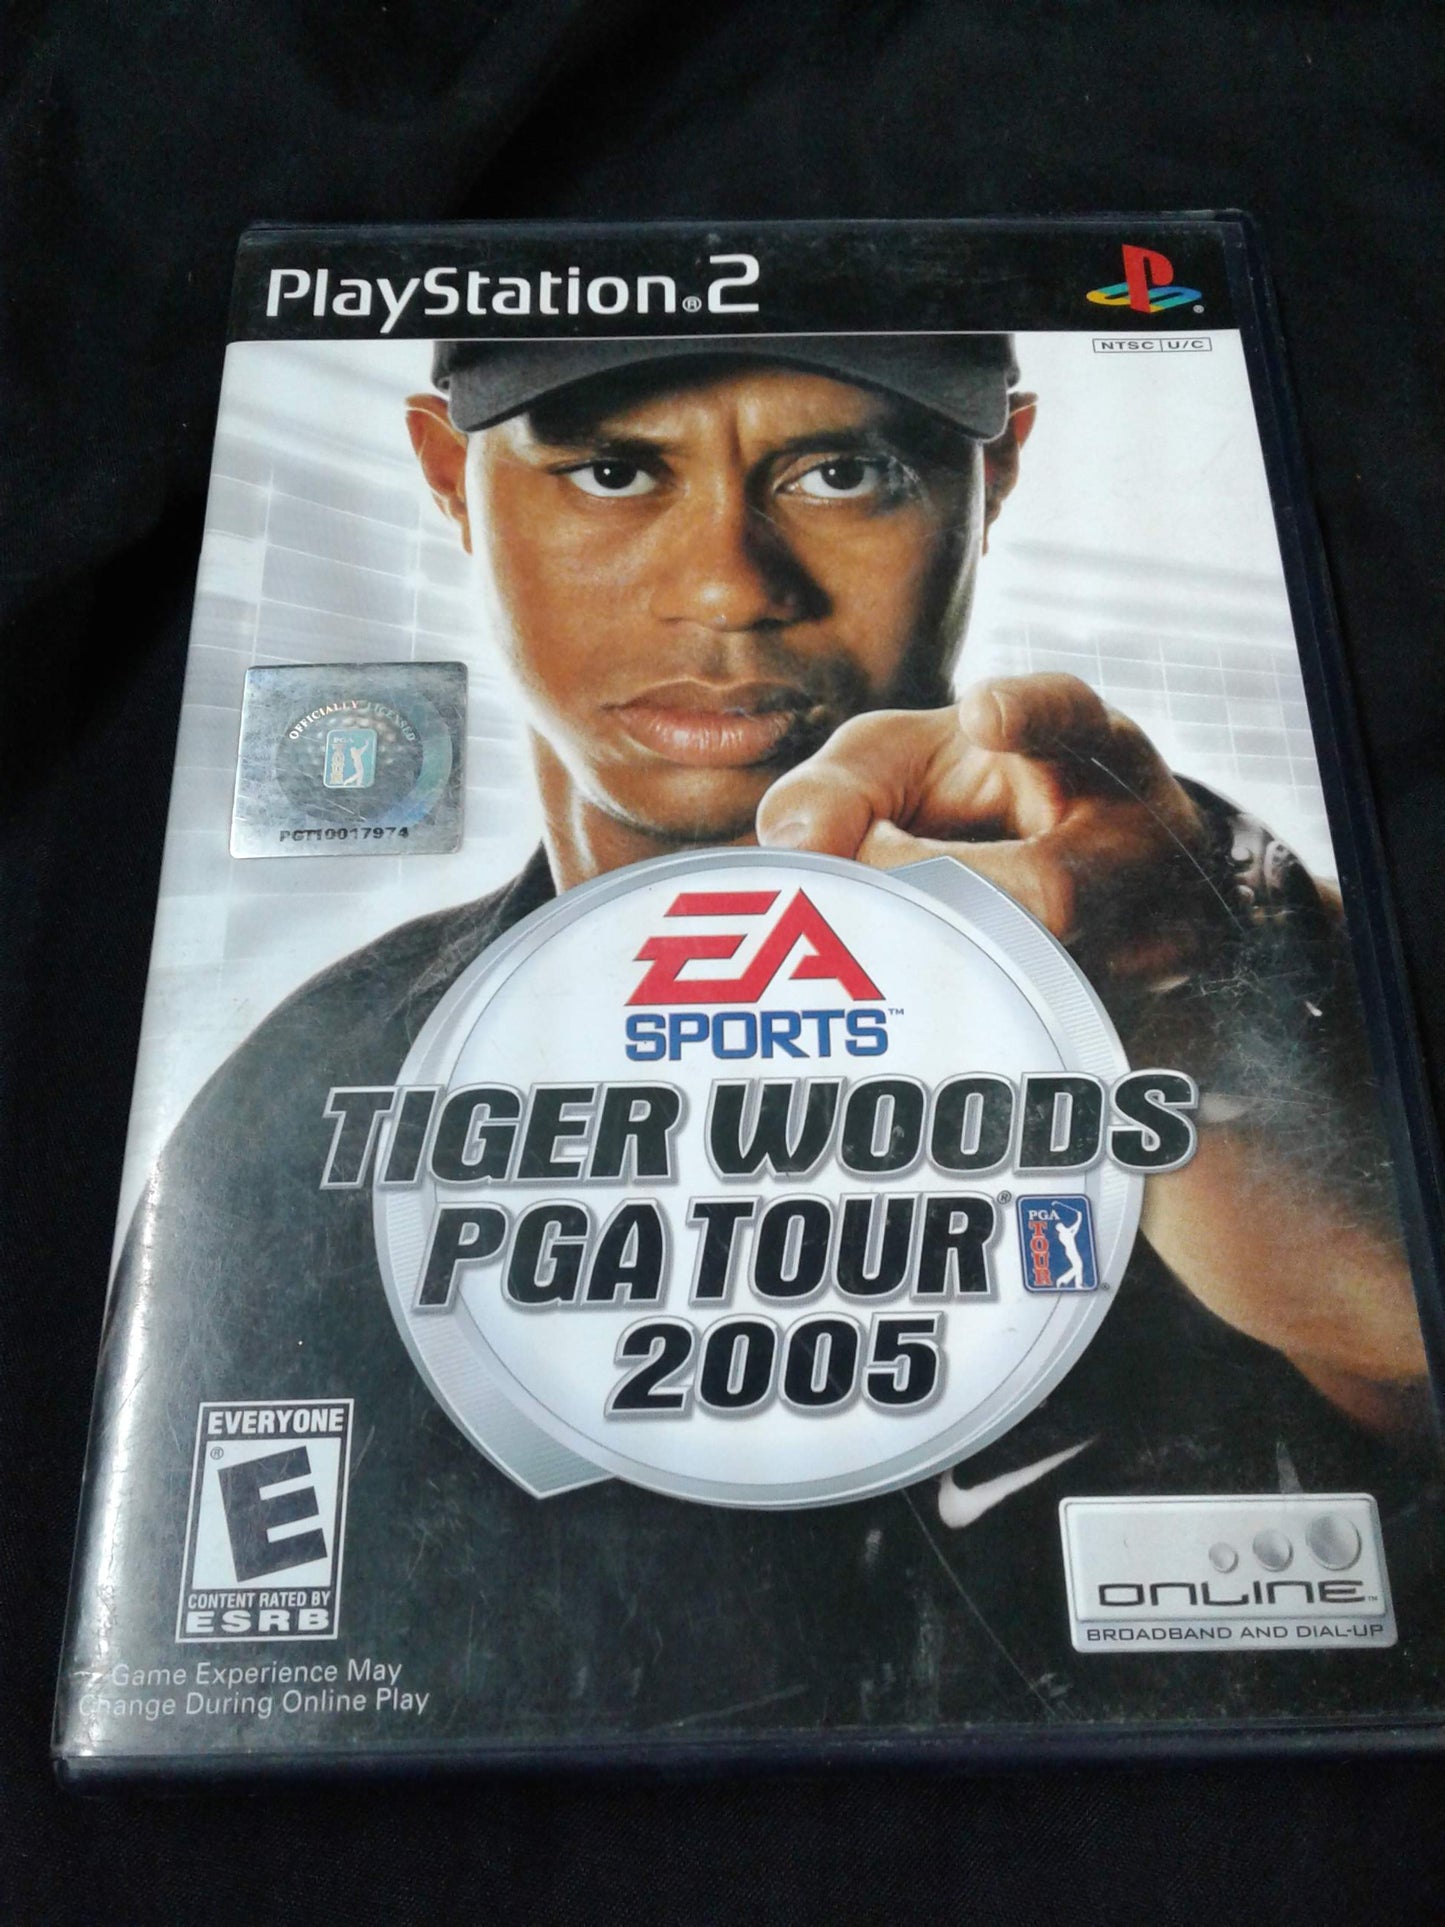 Playstation 2 Tiger Woods PGA tour 2005